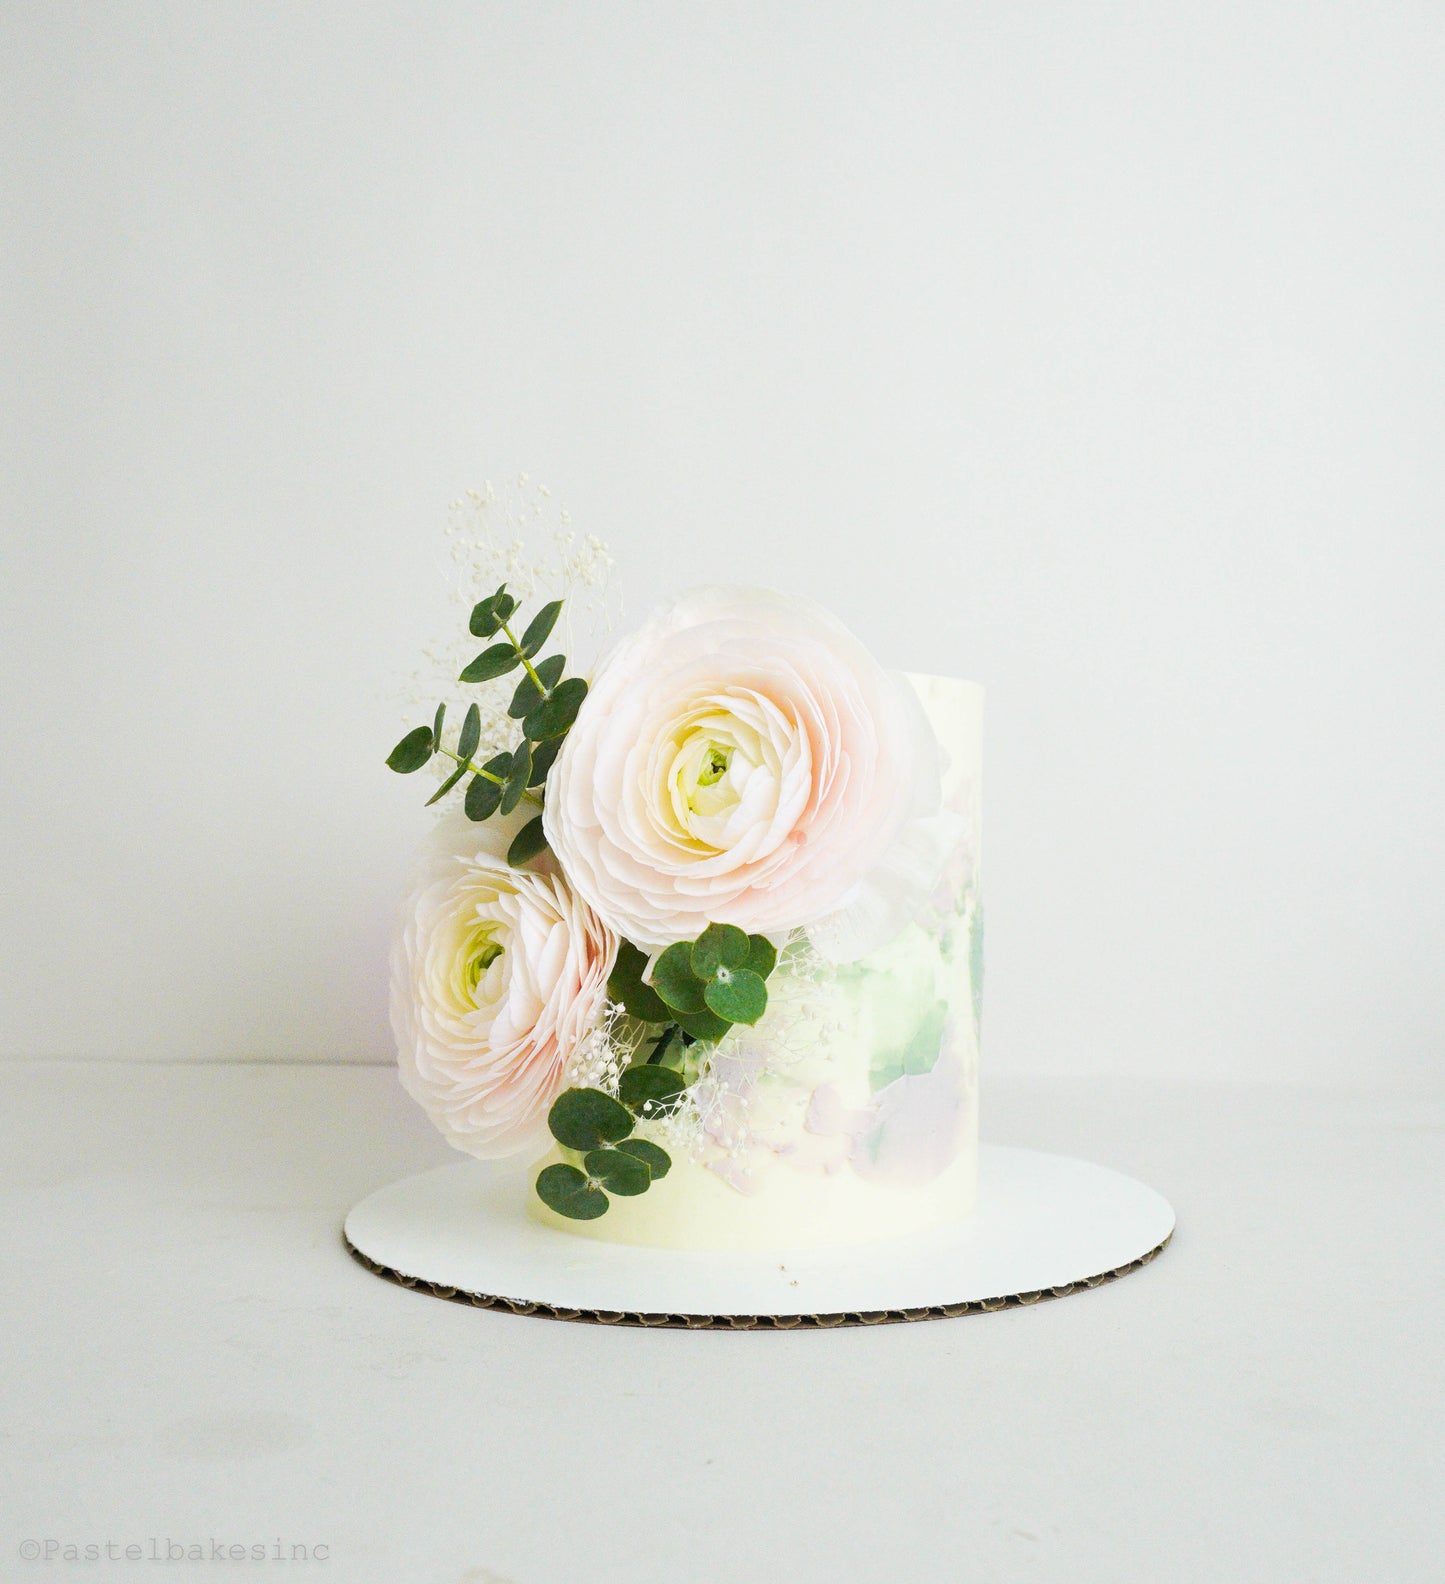 Custom Cake/Cupcake Design